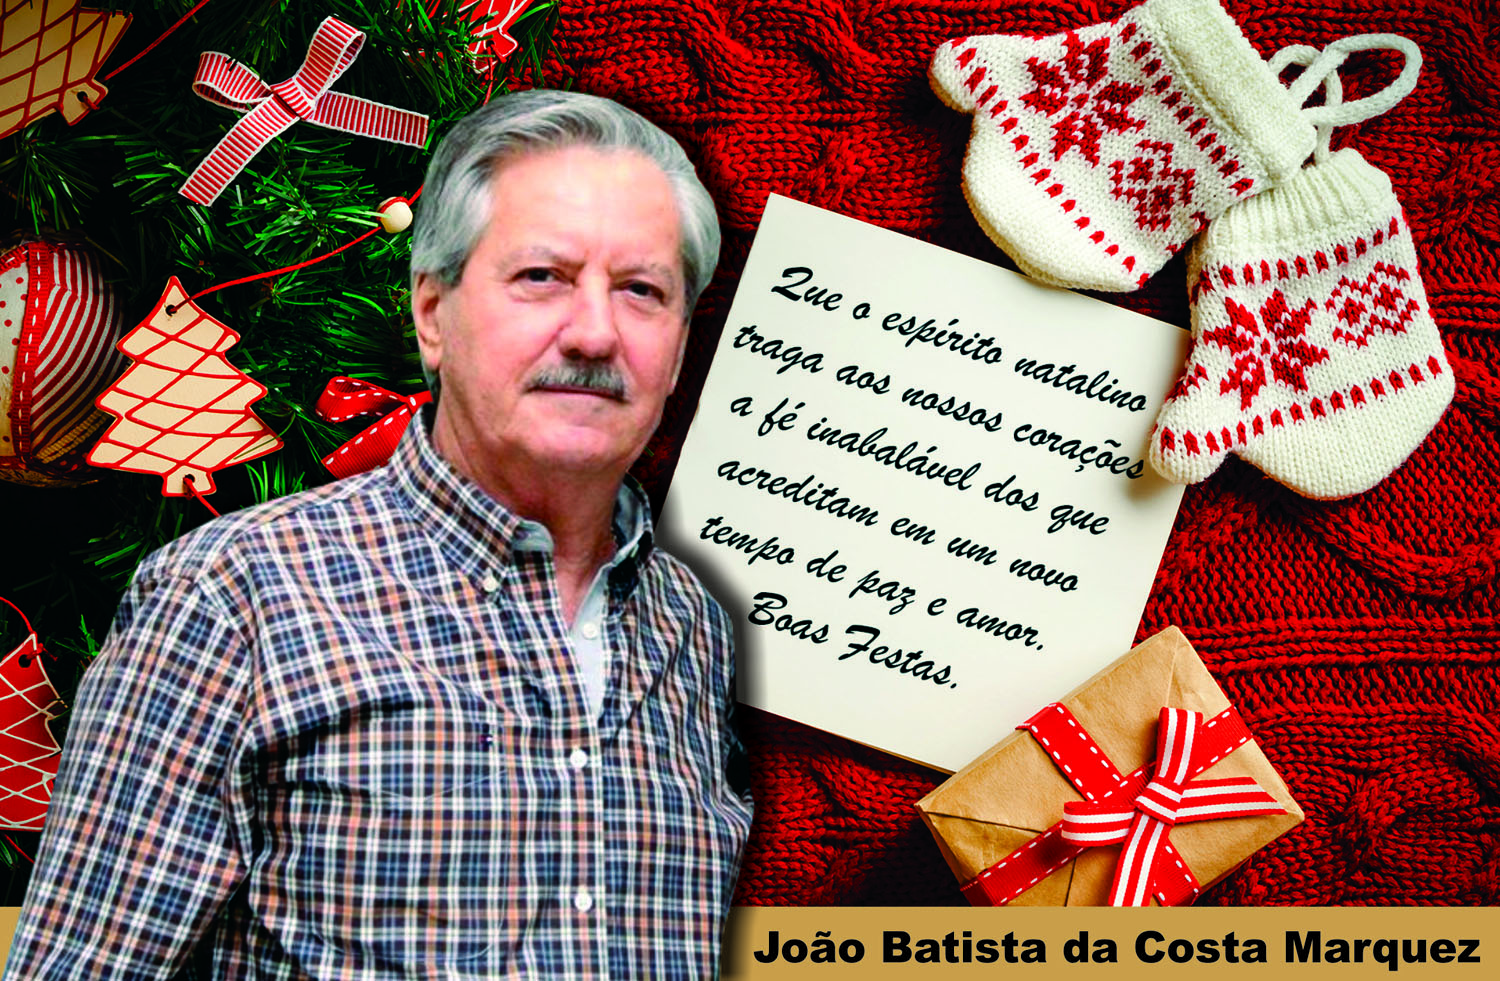 Feliz Natal e um Próspero Ano Novo. São os votos de João Batista da Costa Marques